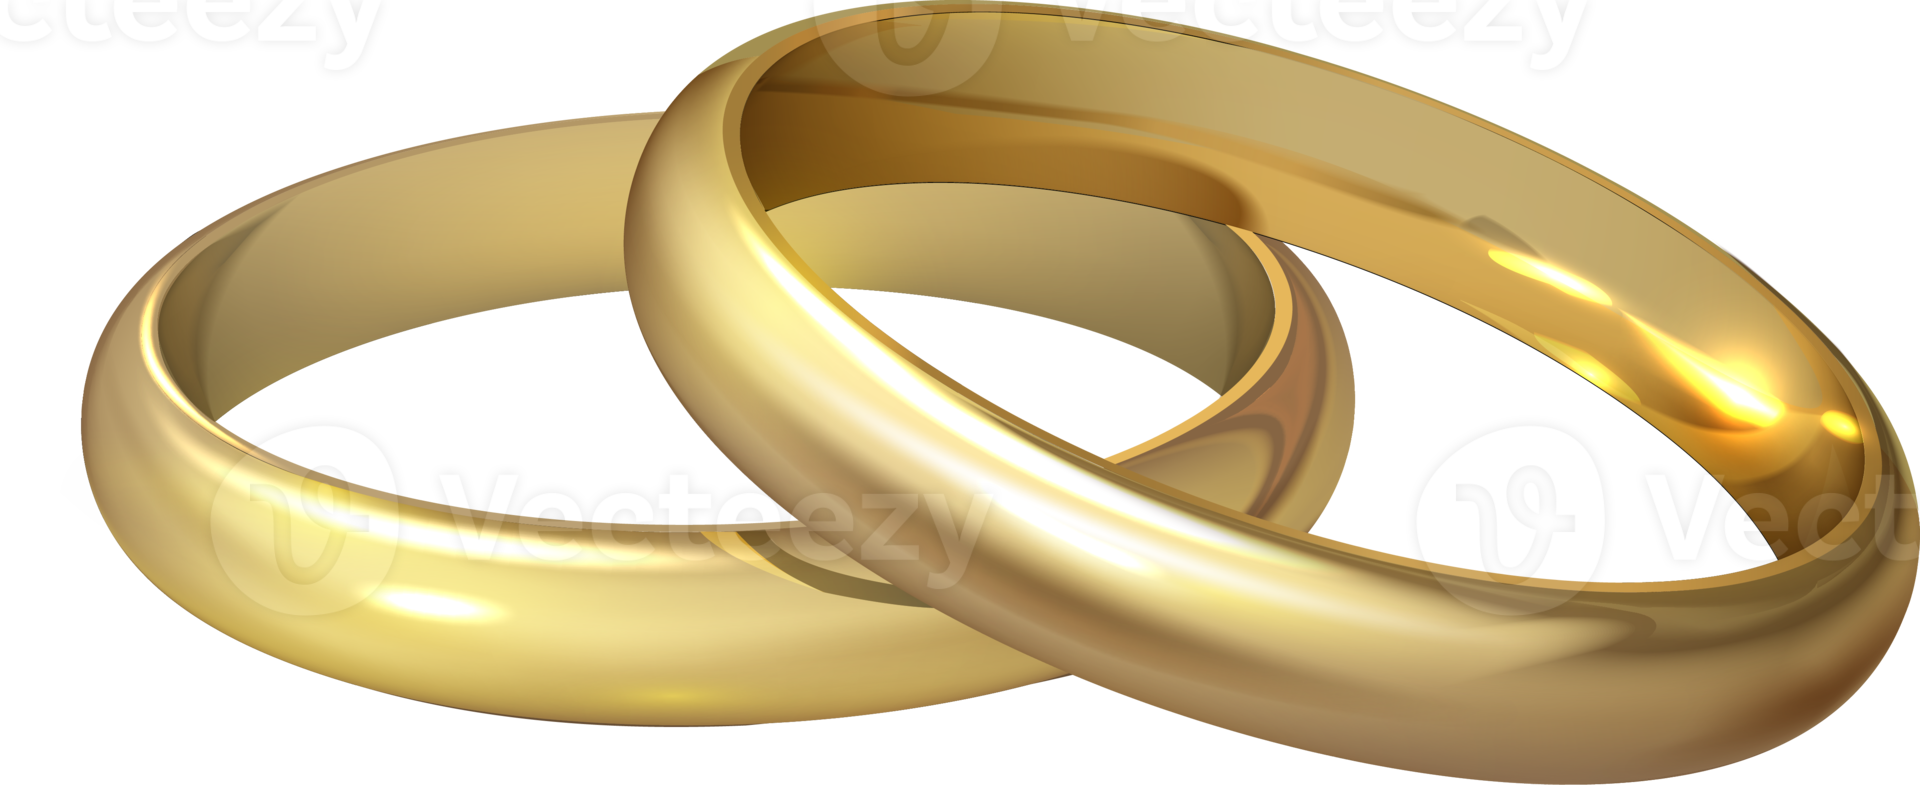 paar- van goud bruiloft ringen png